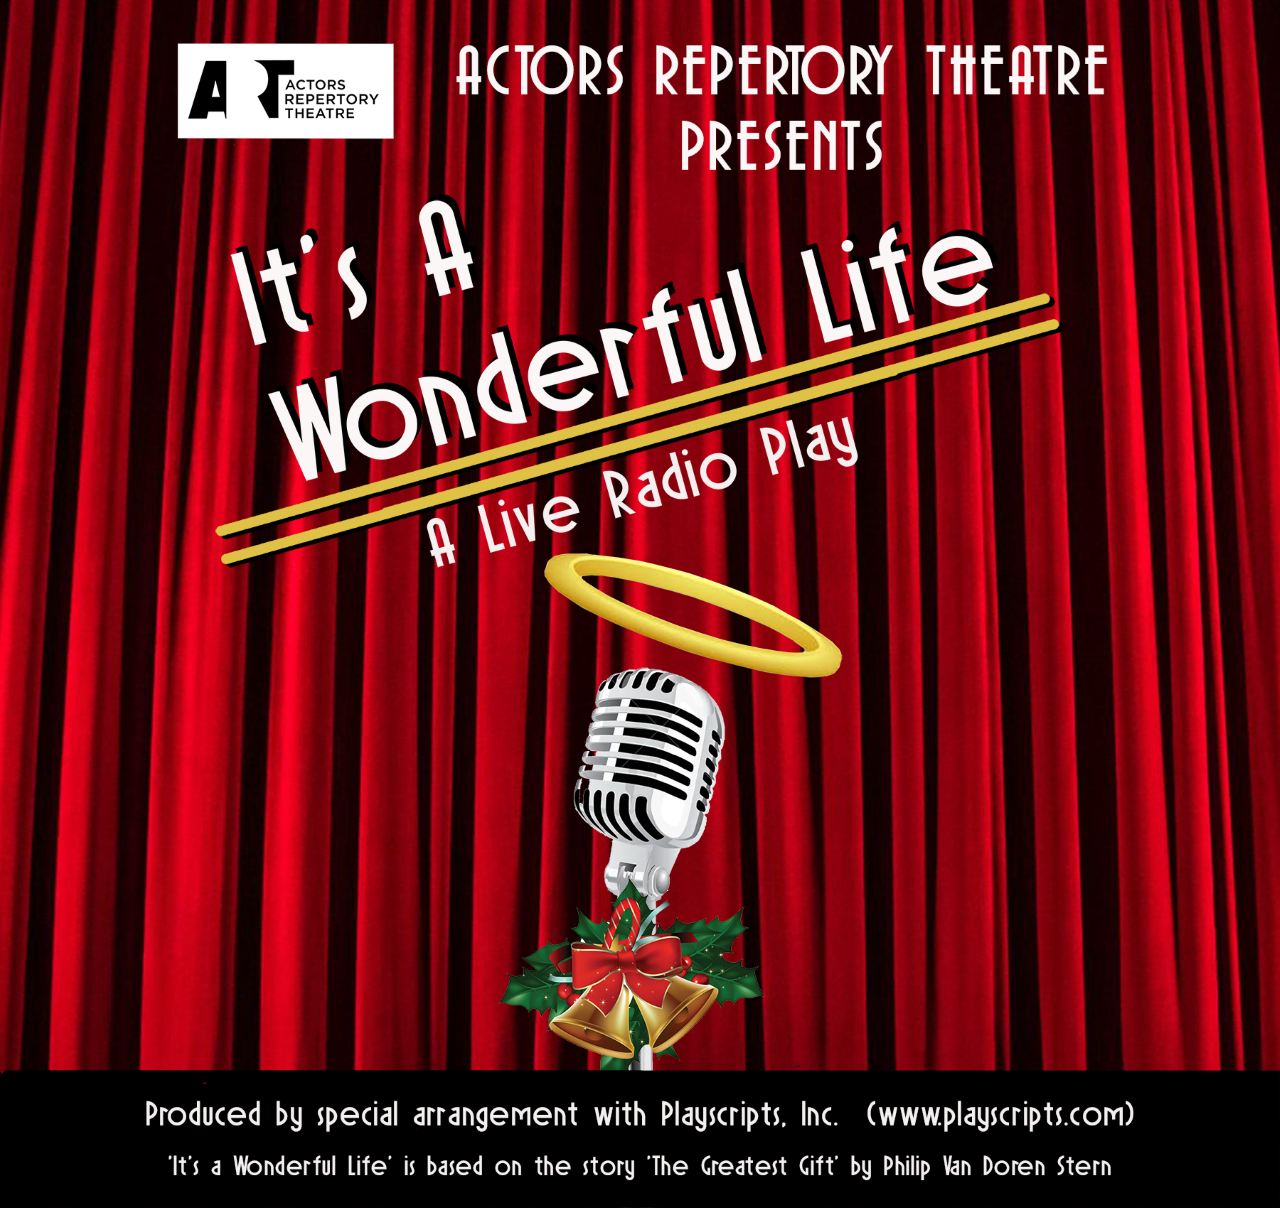 Actors Repertory Theatre presents 'It's a Wonderful Life: A Live Radio Play